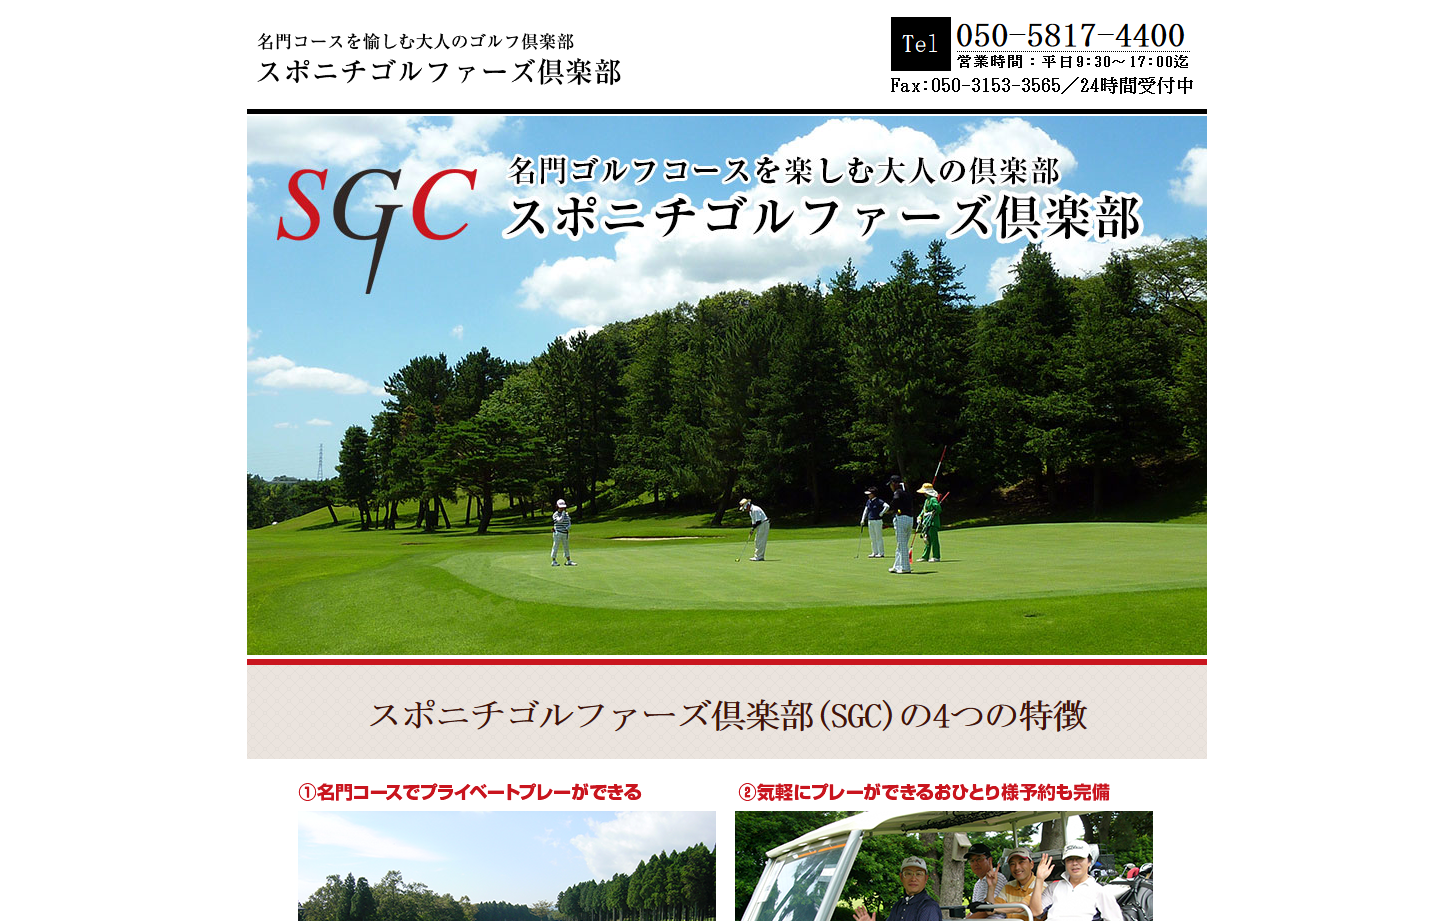 SGC スポニチゴルファーズ倶楽部 -憧れのあの名門コースでラウンドしませんか？